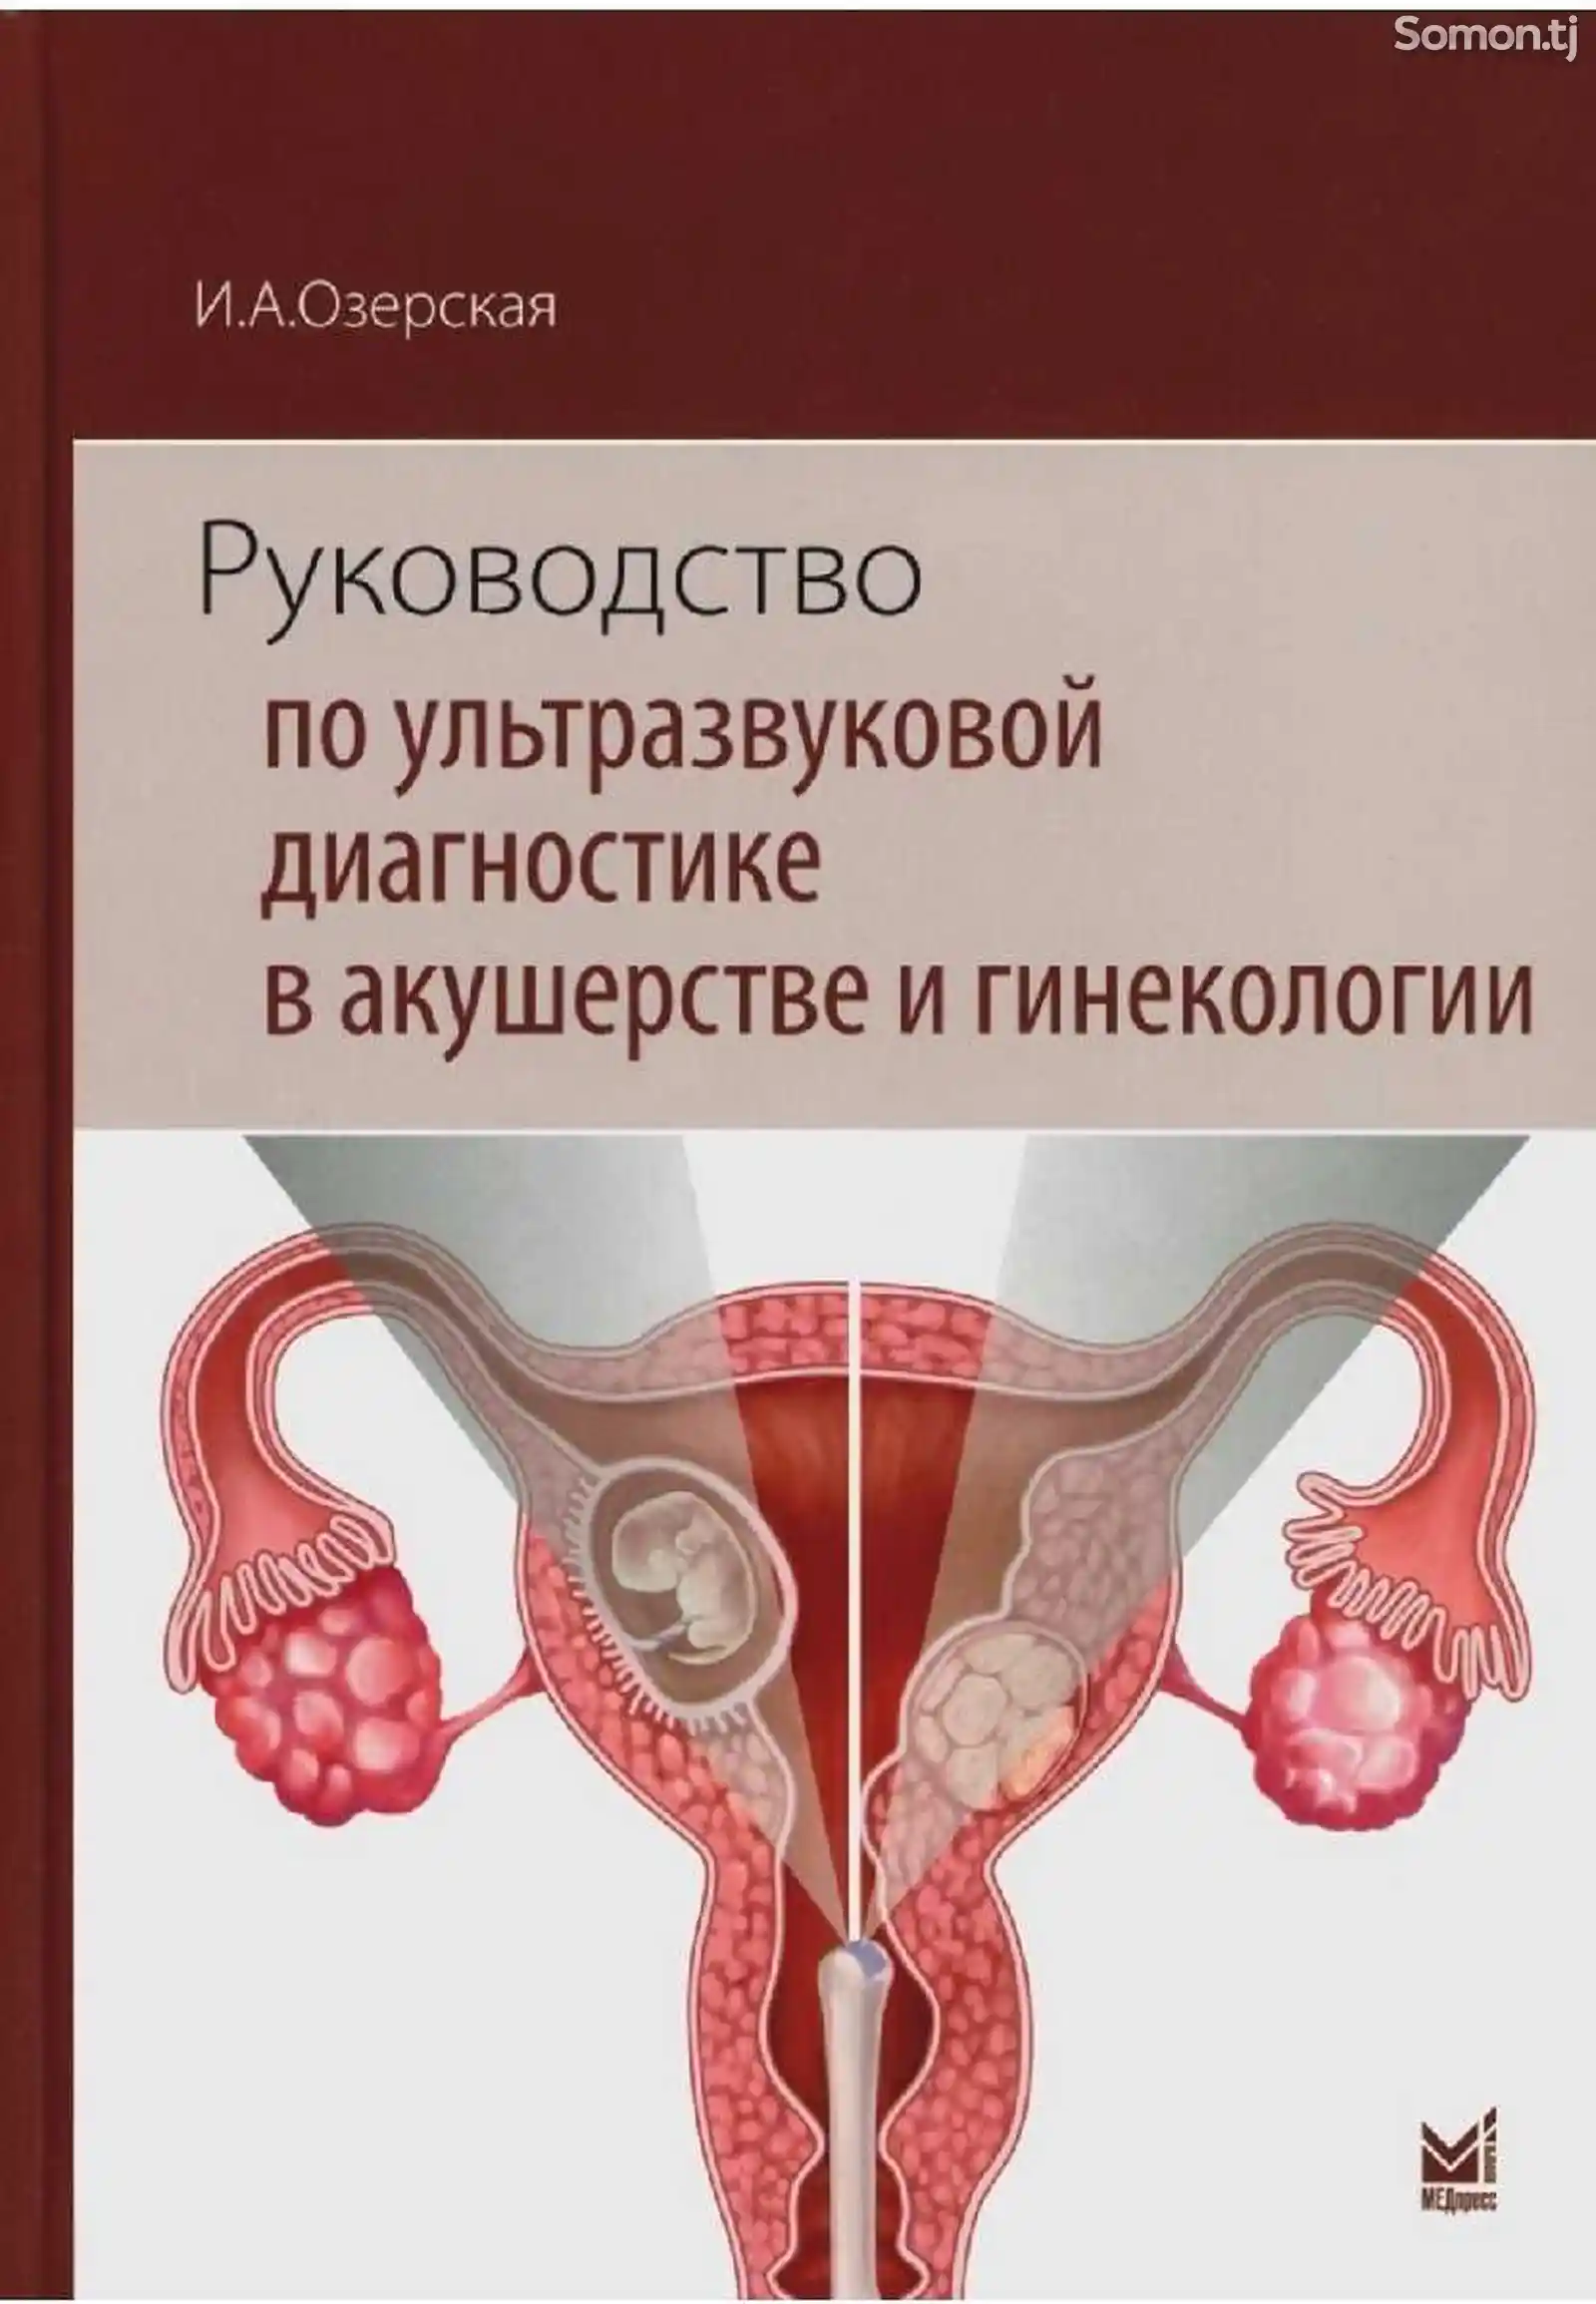 Книга руководство по ультразвуковой диагностике в акушерстве и гинекологии-1